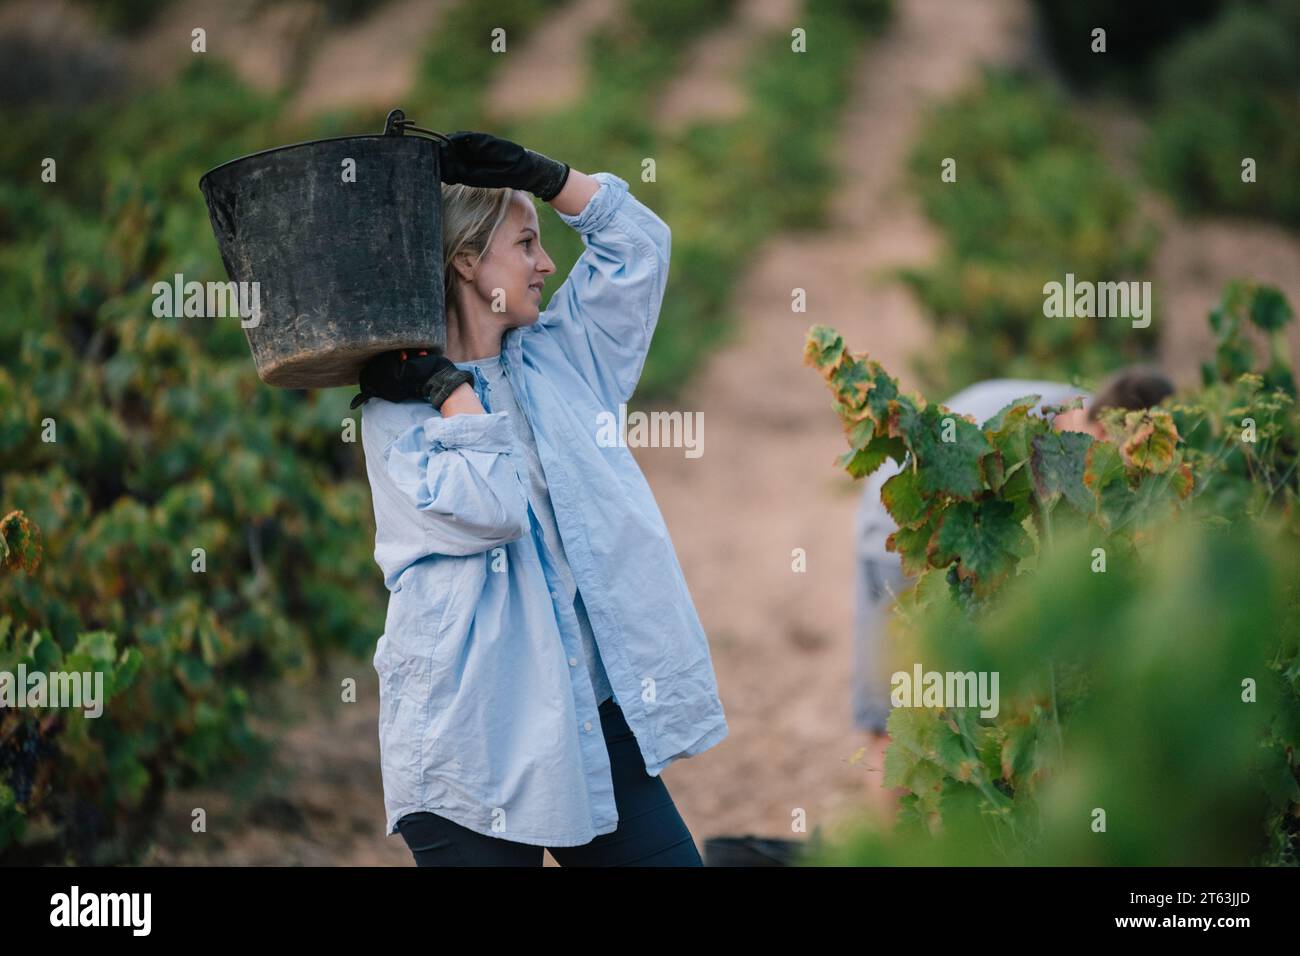 Landwirtin in lässiger Kleidung und schwarzen Handschuhen mit einem Eimer Trauben bei der Ernte von Früchten in Weinbauplantagen Stockfoto